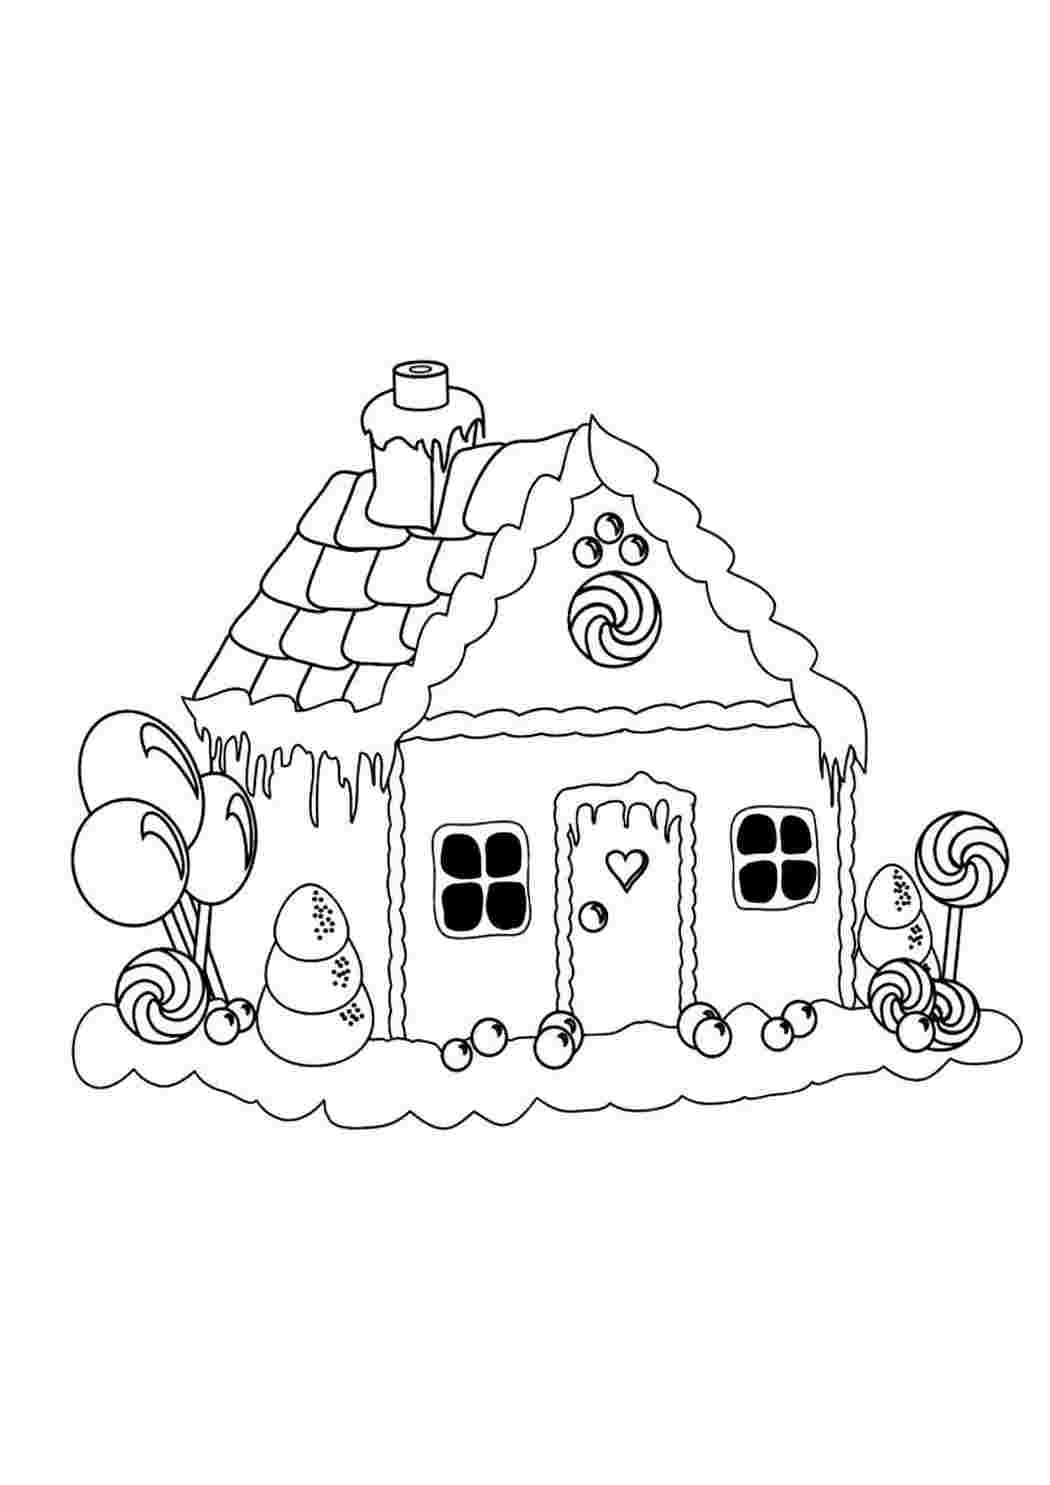 Картонный домик раскраска 120x87x73 / Раскраски / Игровой домик / Подарок для детей